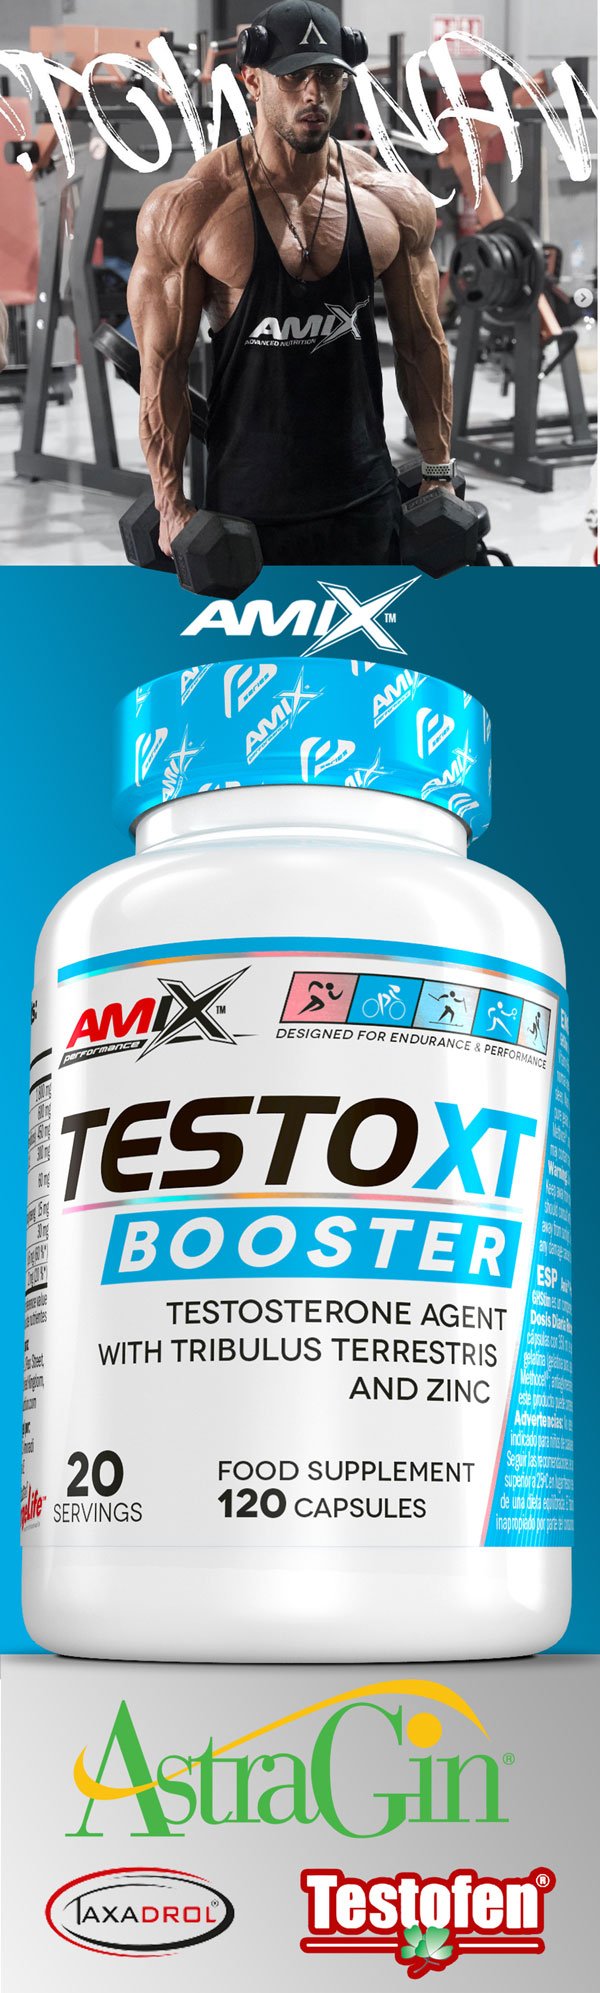 amix-booster-testoseronu